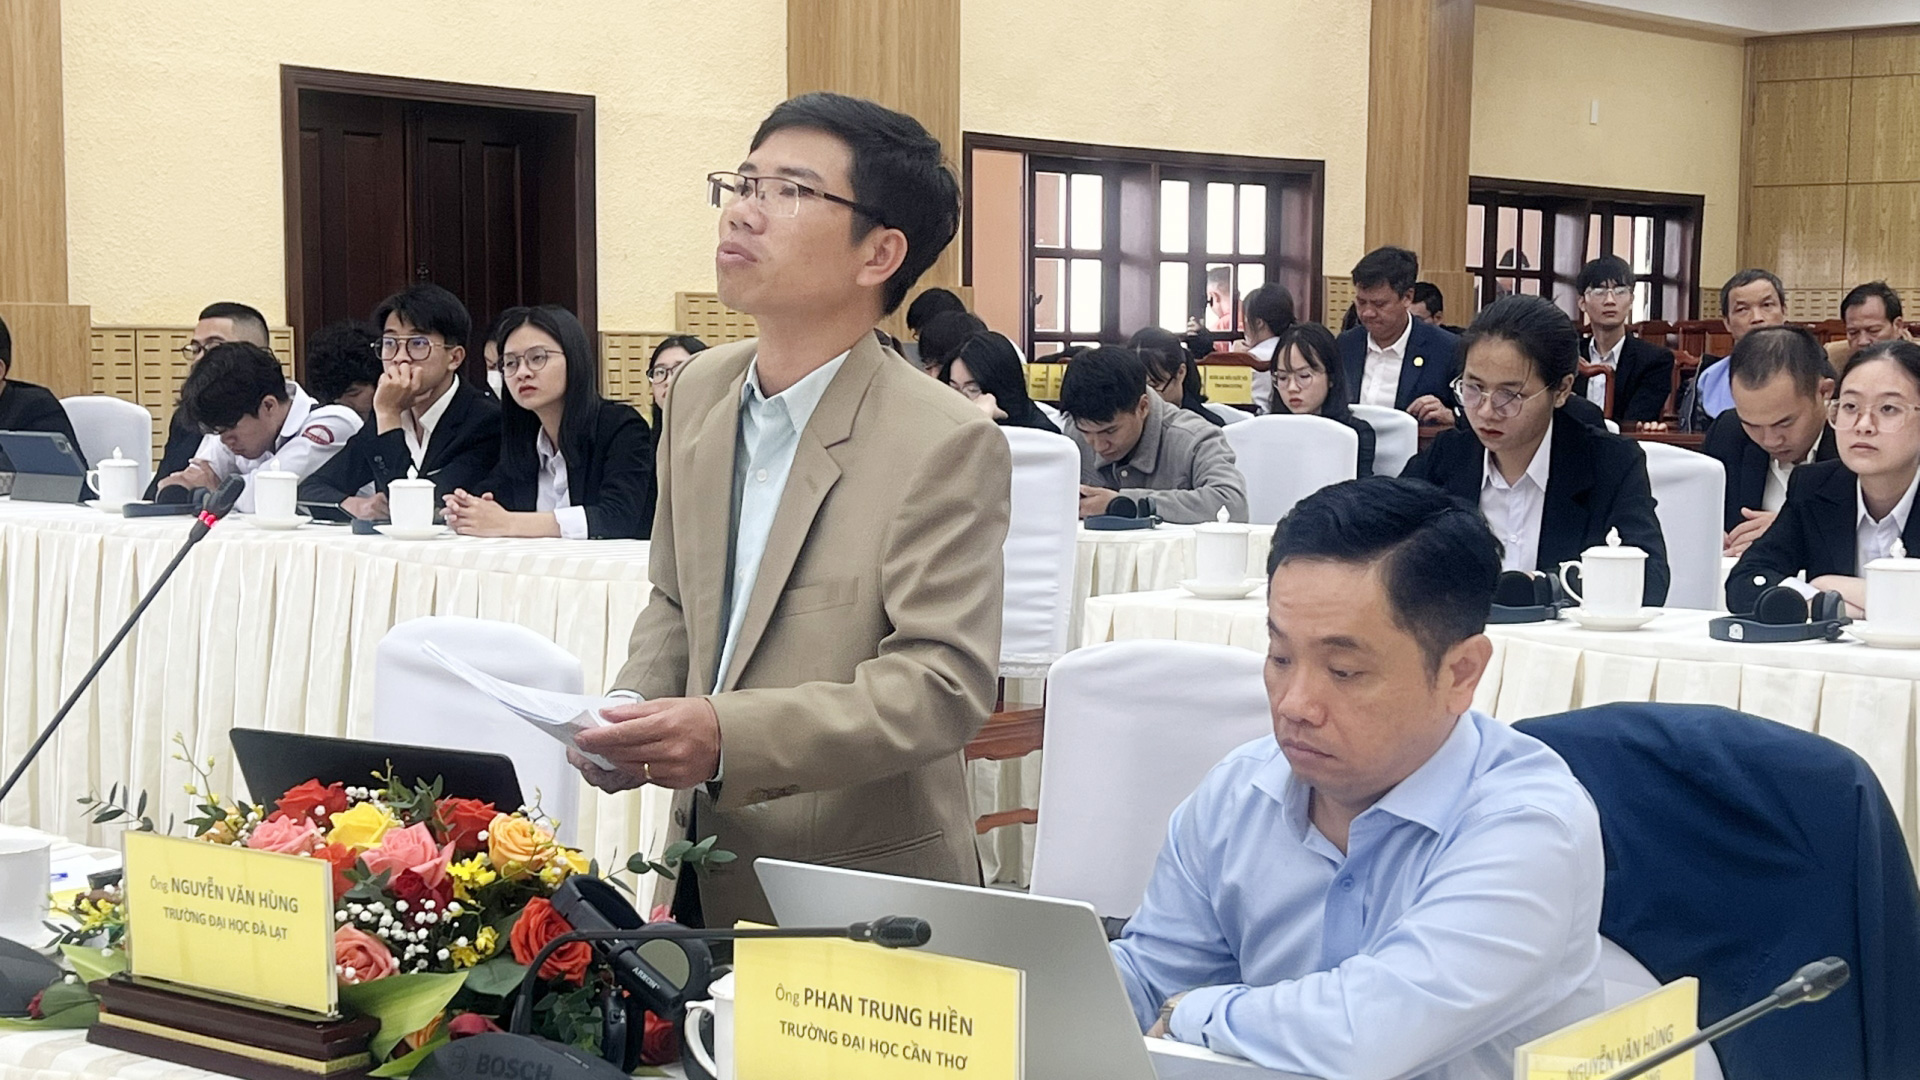 Thạc sĩ, giảng viên chính Nguyễn Văn Hùng - Trường Đại học Đà Lạt trao đổi tại hội thảo